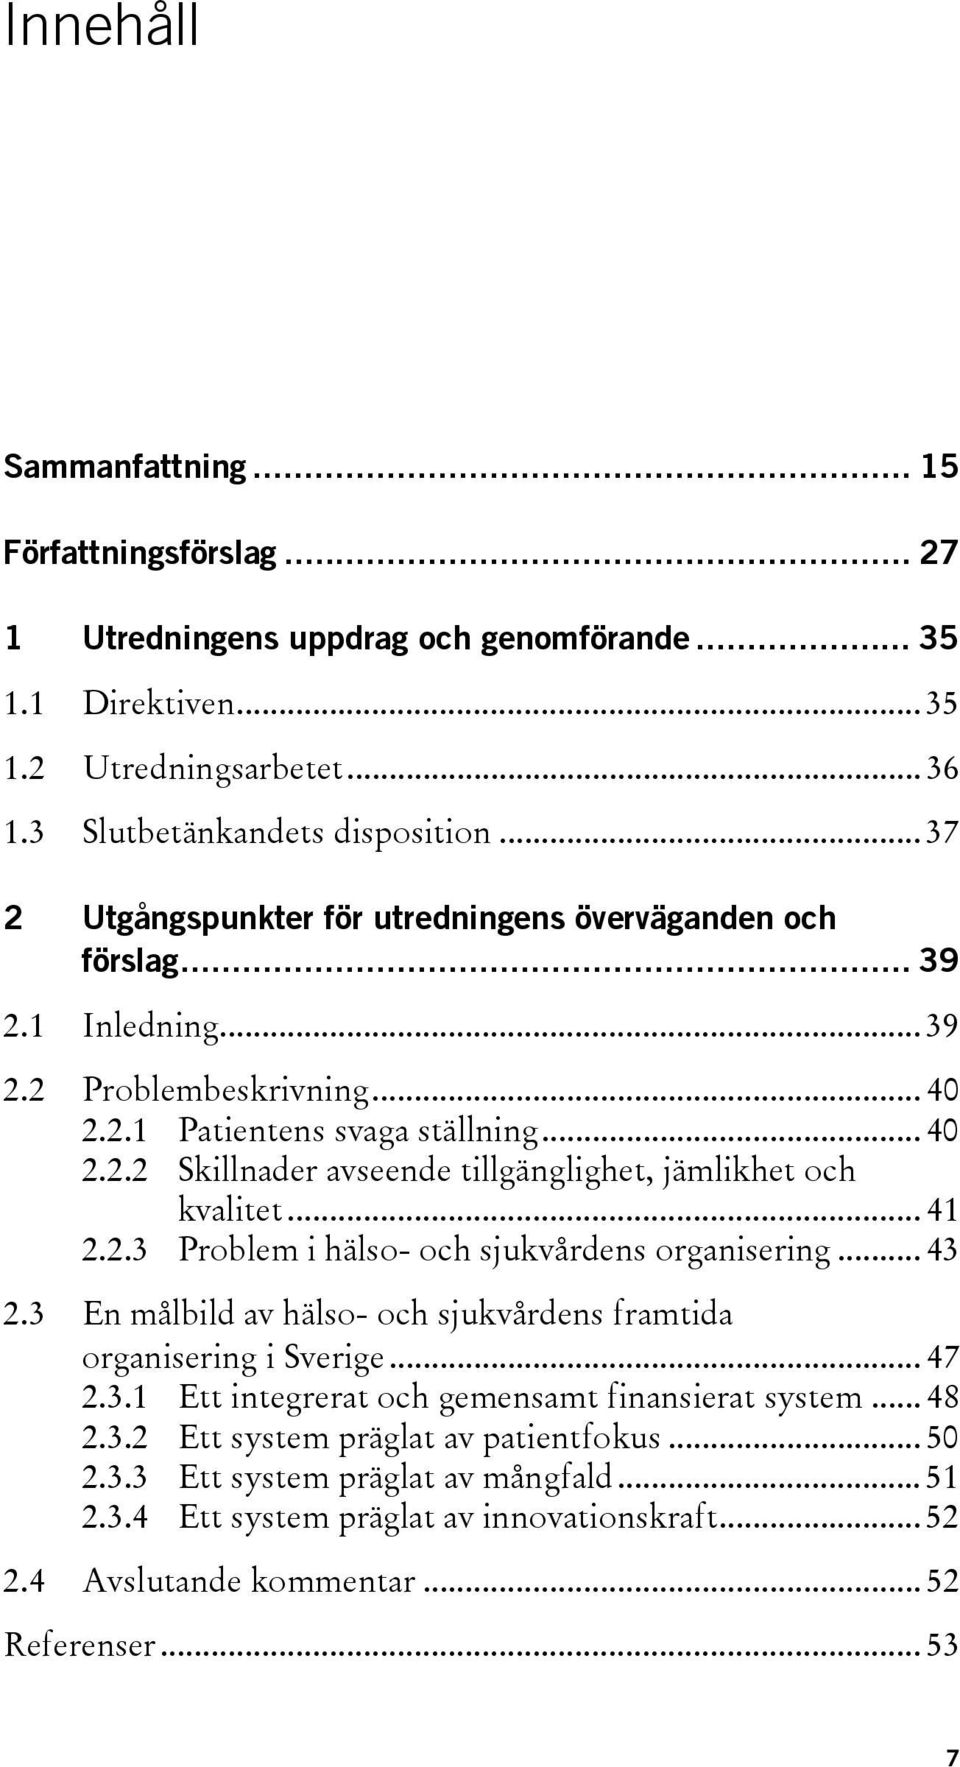 .. 41 2.2.3 Problem i hälso- och sjukvårdens organisering... 43 2.3 En målbild av hälso- och sjukvårdens framtida organisering i Sverige... 47 2.3.1 Ett integrerat och gemensamt finansierat system.